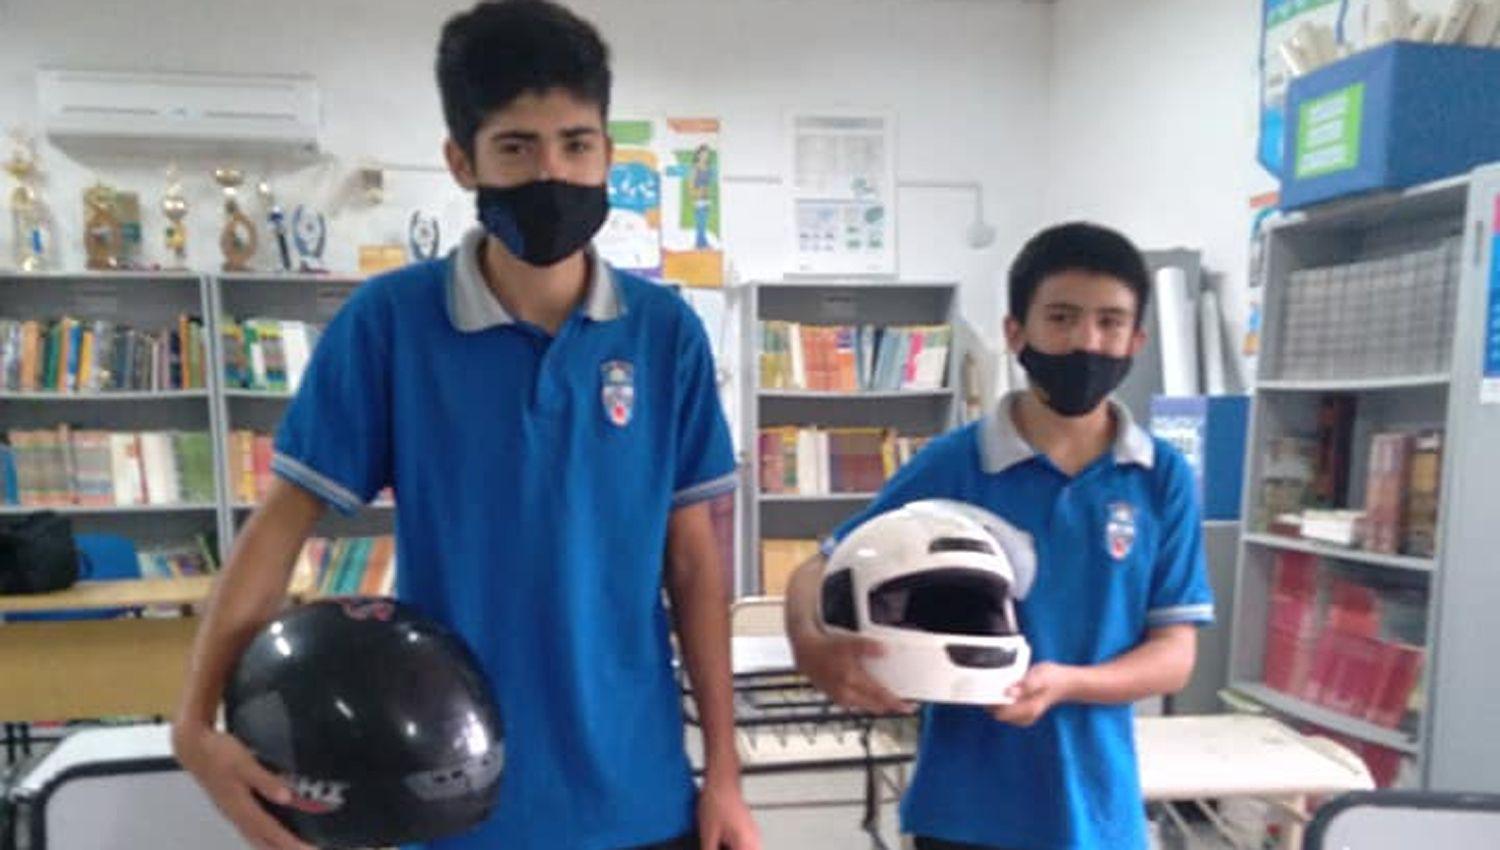 Sumampa- lanzaron una campantildea para conseguir dos cascos para estudiantes y en diacuteas les donaron 10